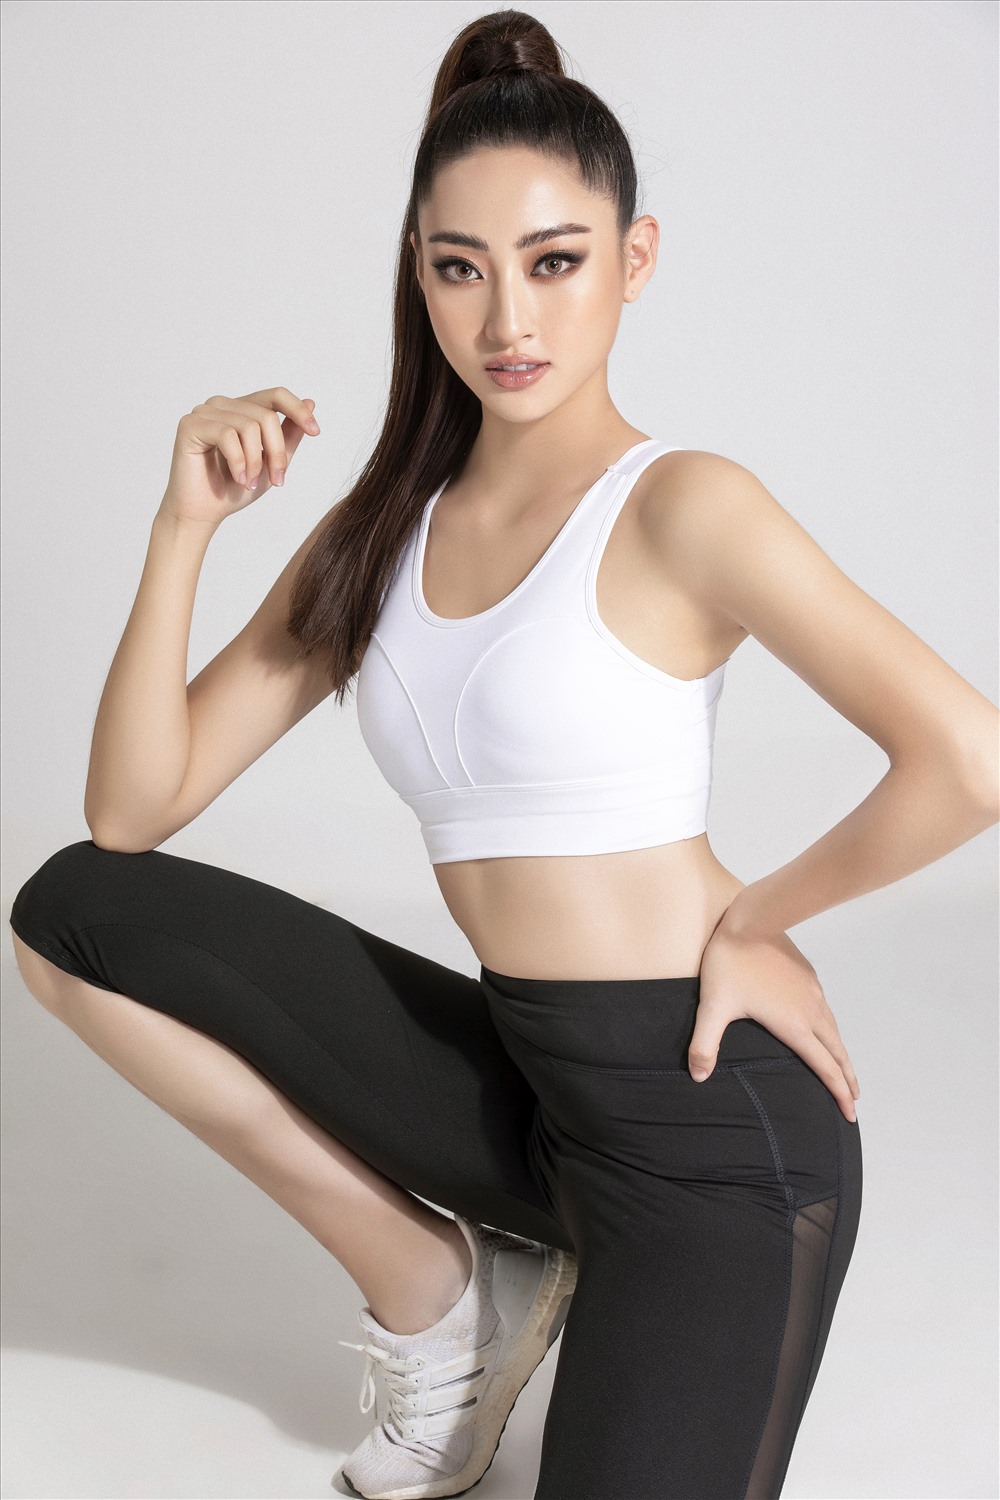 Trên trang chủ của Miss World, đại diện Việt Nam xuất hiện với hai hình ảnh đối lập, một kiêu sa, quyến rũ, một khỏe khắn, năng động. Ảnh: Lê Thiện Viễn.